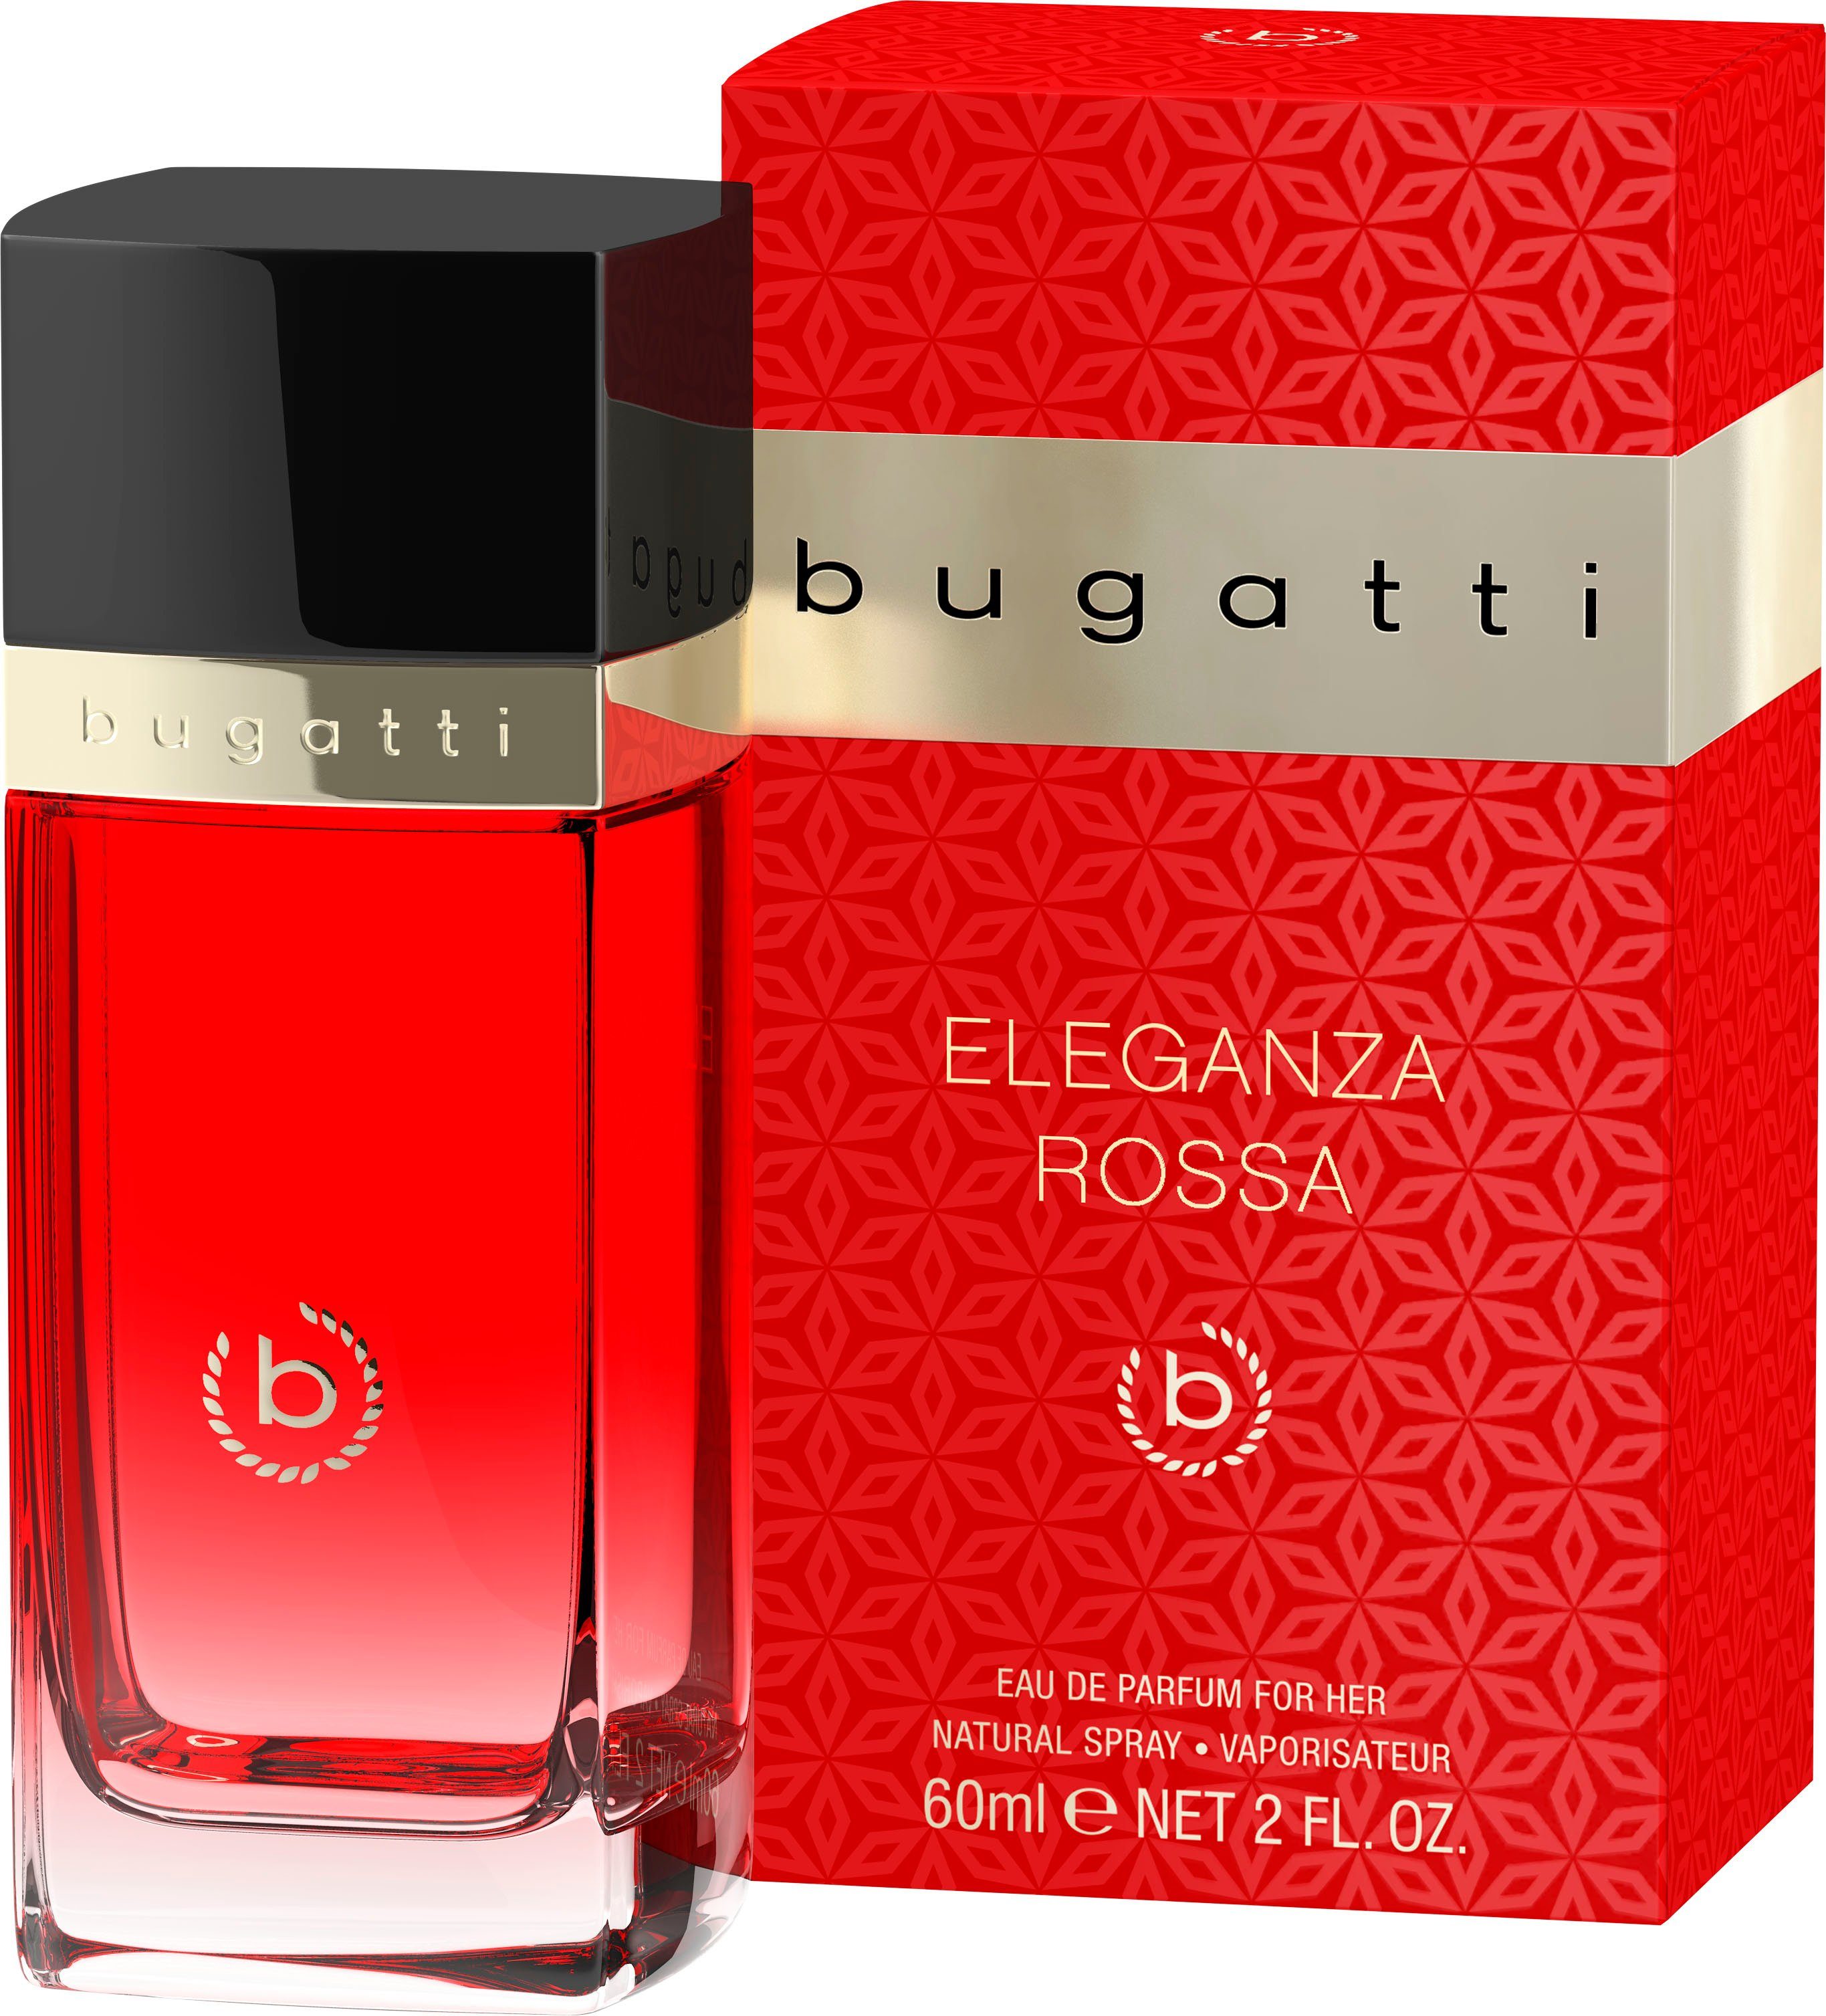 Eau her EdP Parfum Eleganza 60 BUGATTI Rossa ml bugatti for de